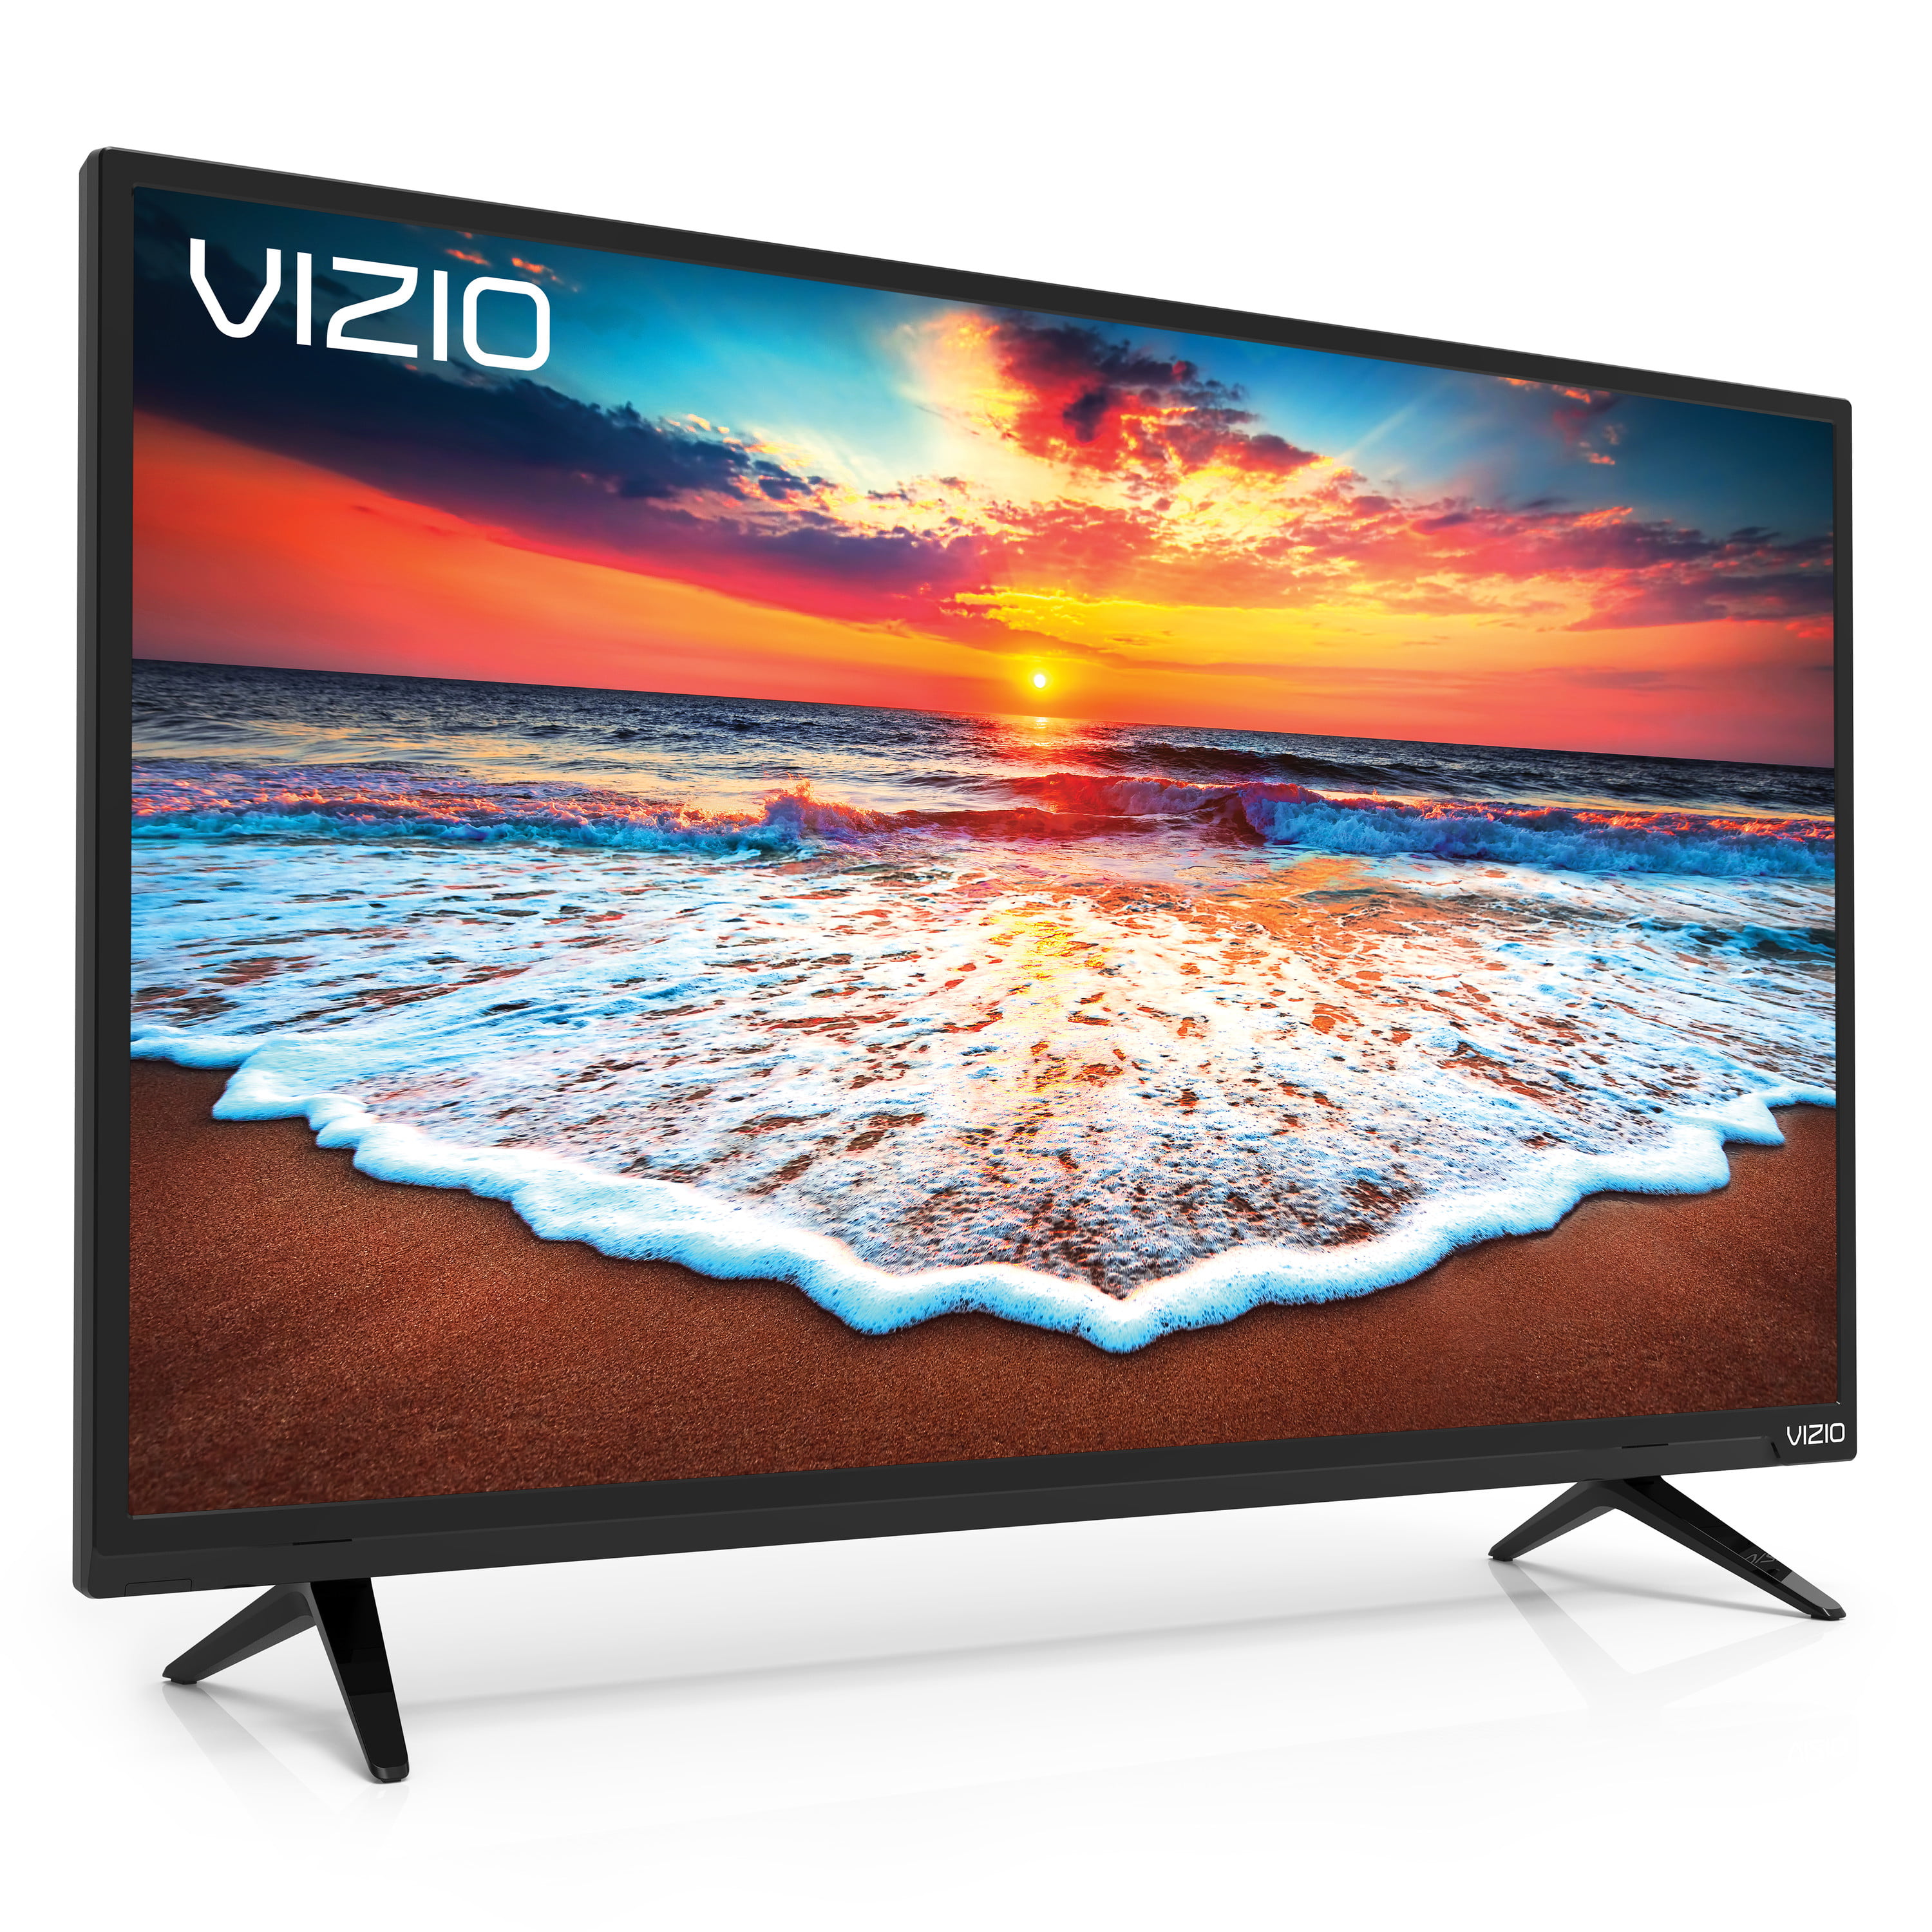 VIZIO 43” Class FHD (1080P) Smart LED TV (D43fx-F4)